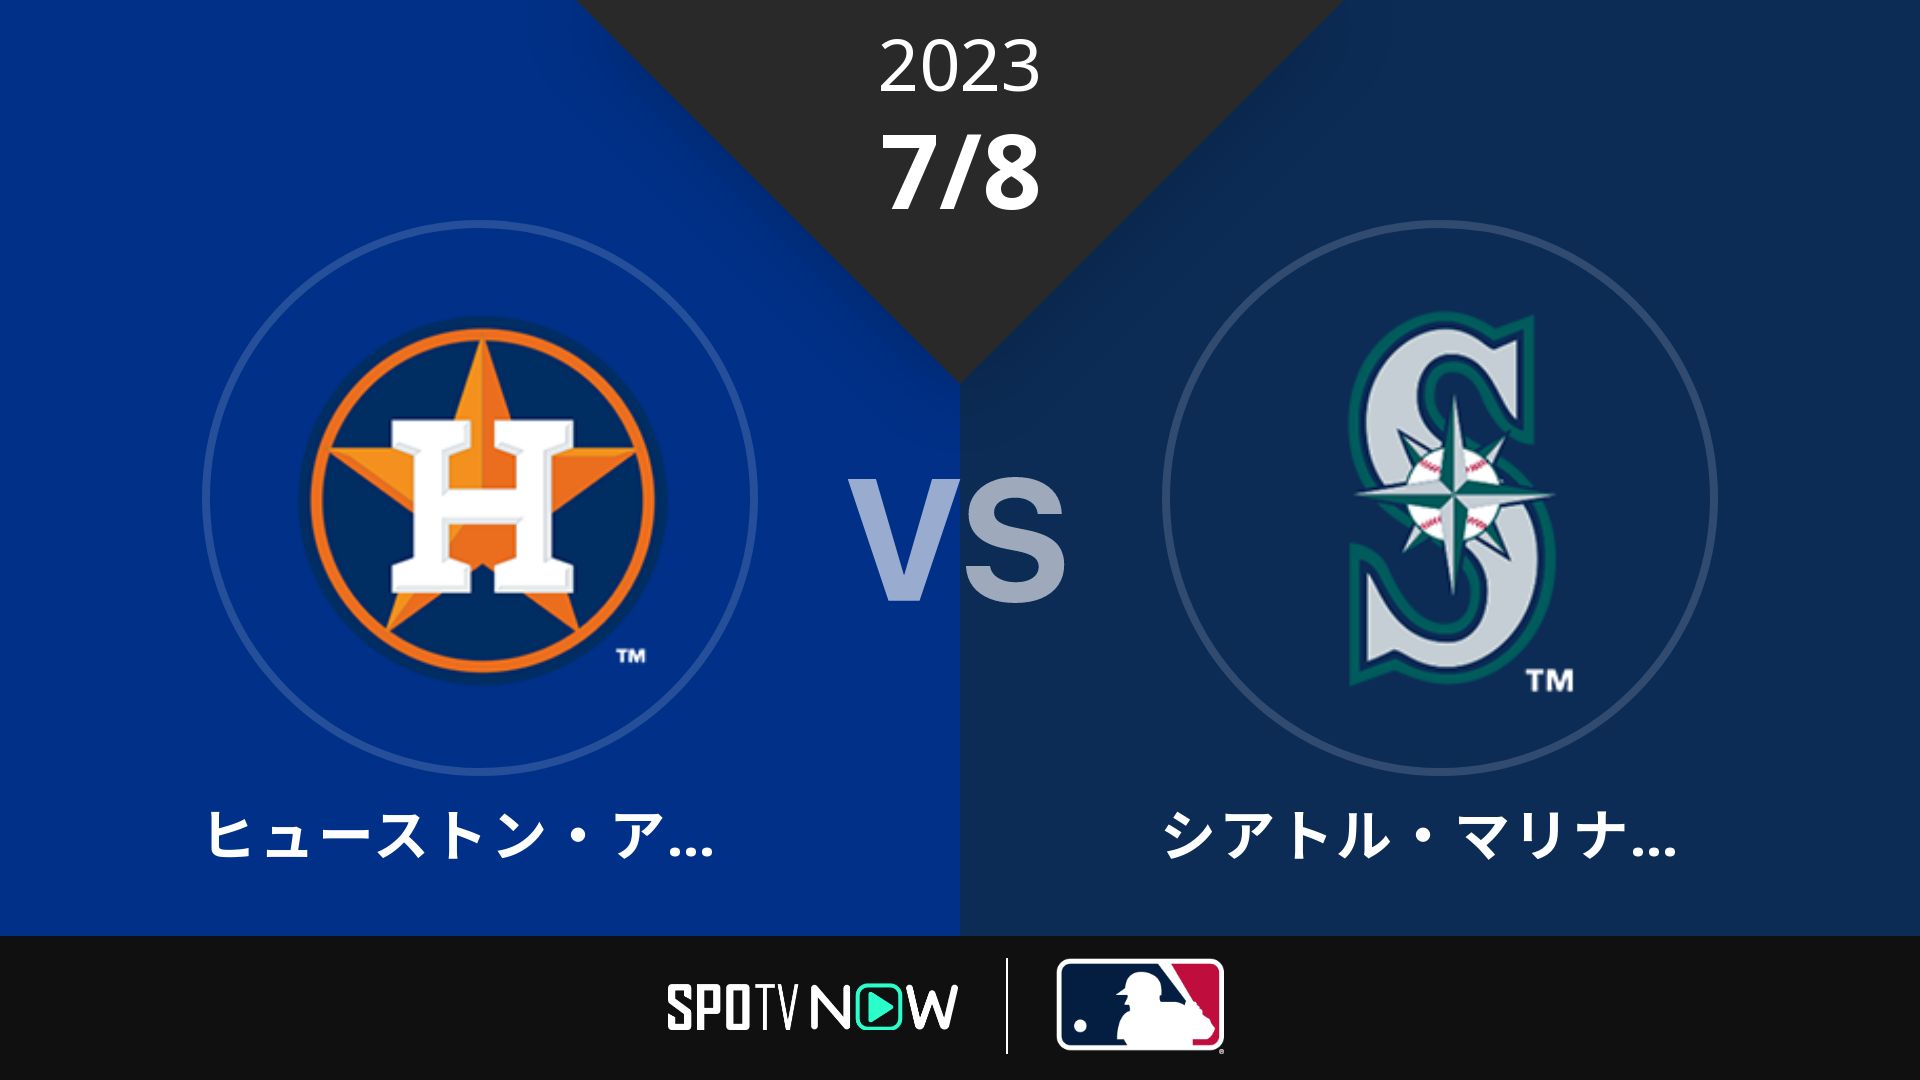 2023/7/8 アストロズ vs マリナーズ [MLB]